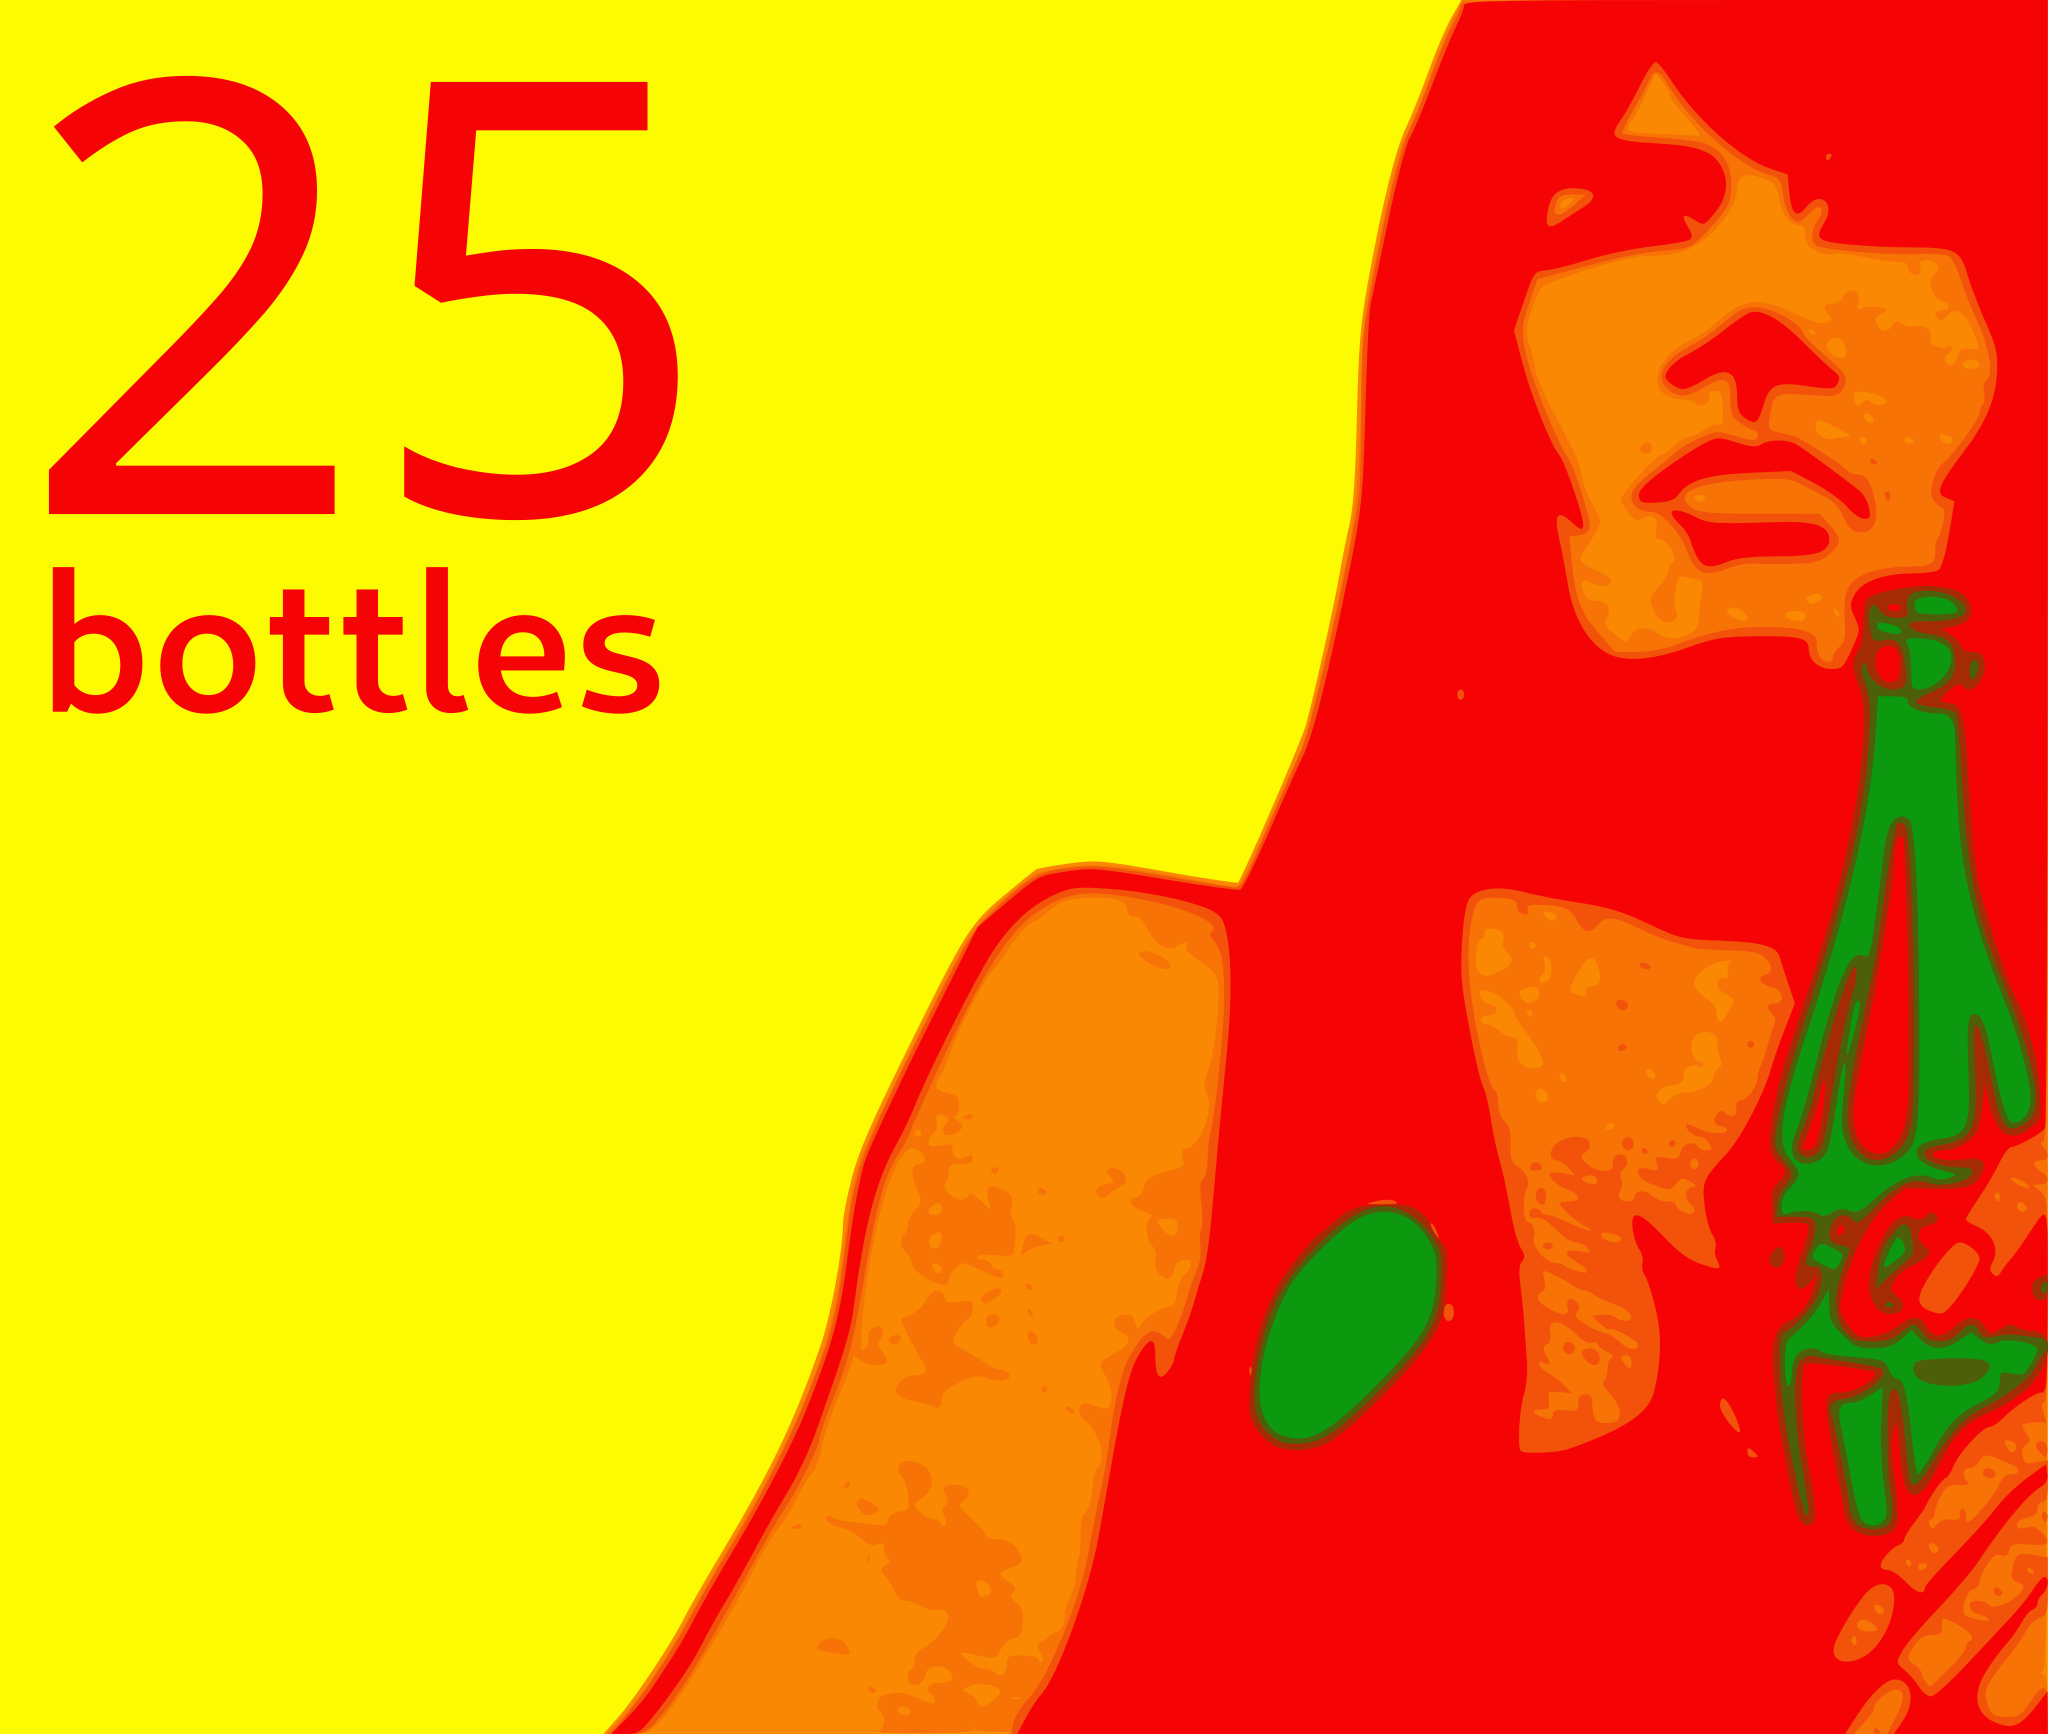 25 bottles